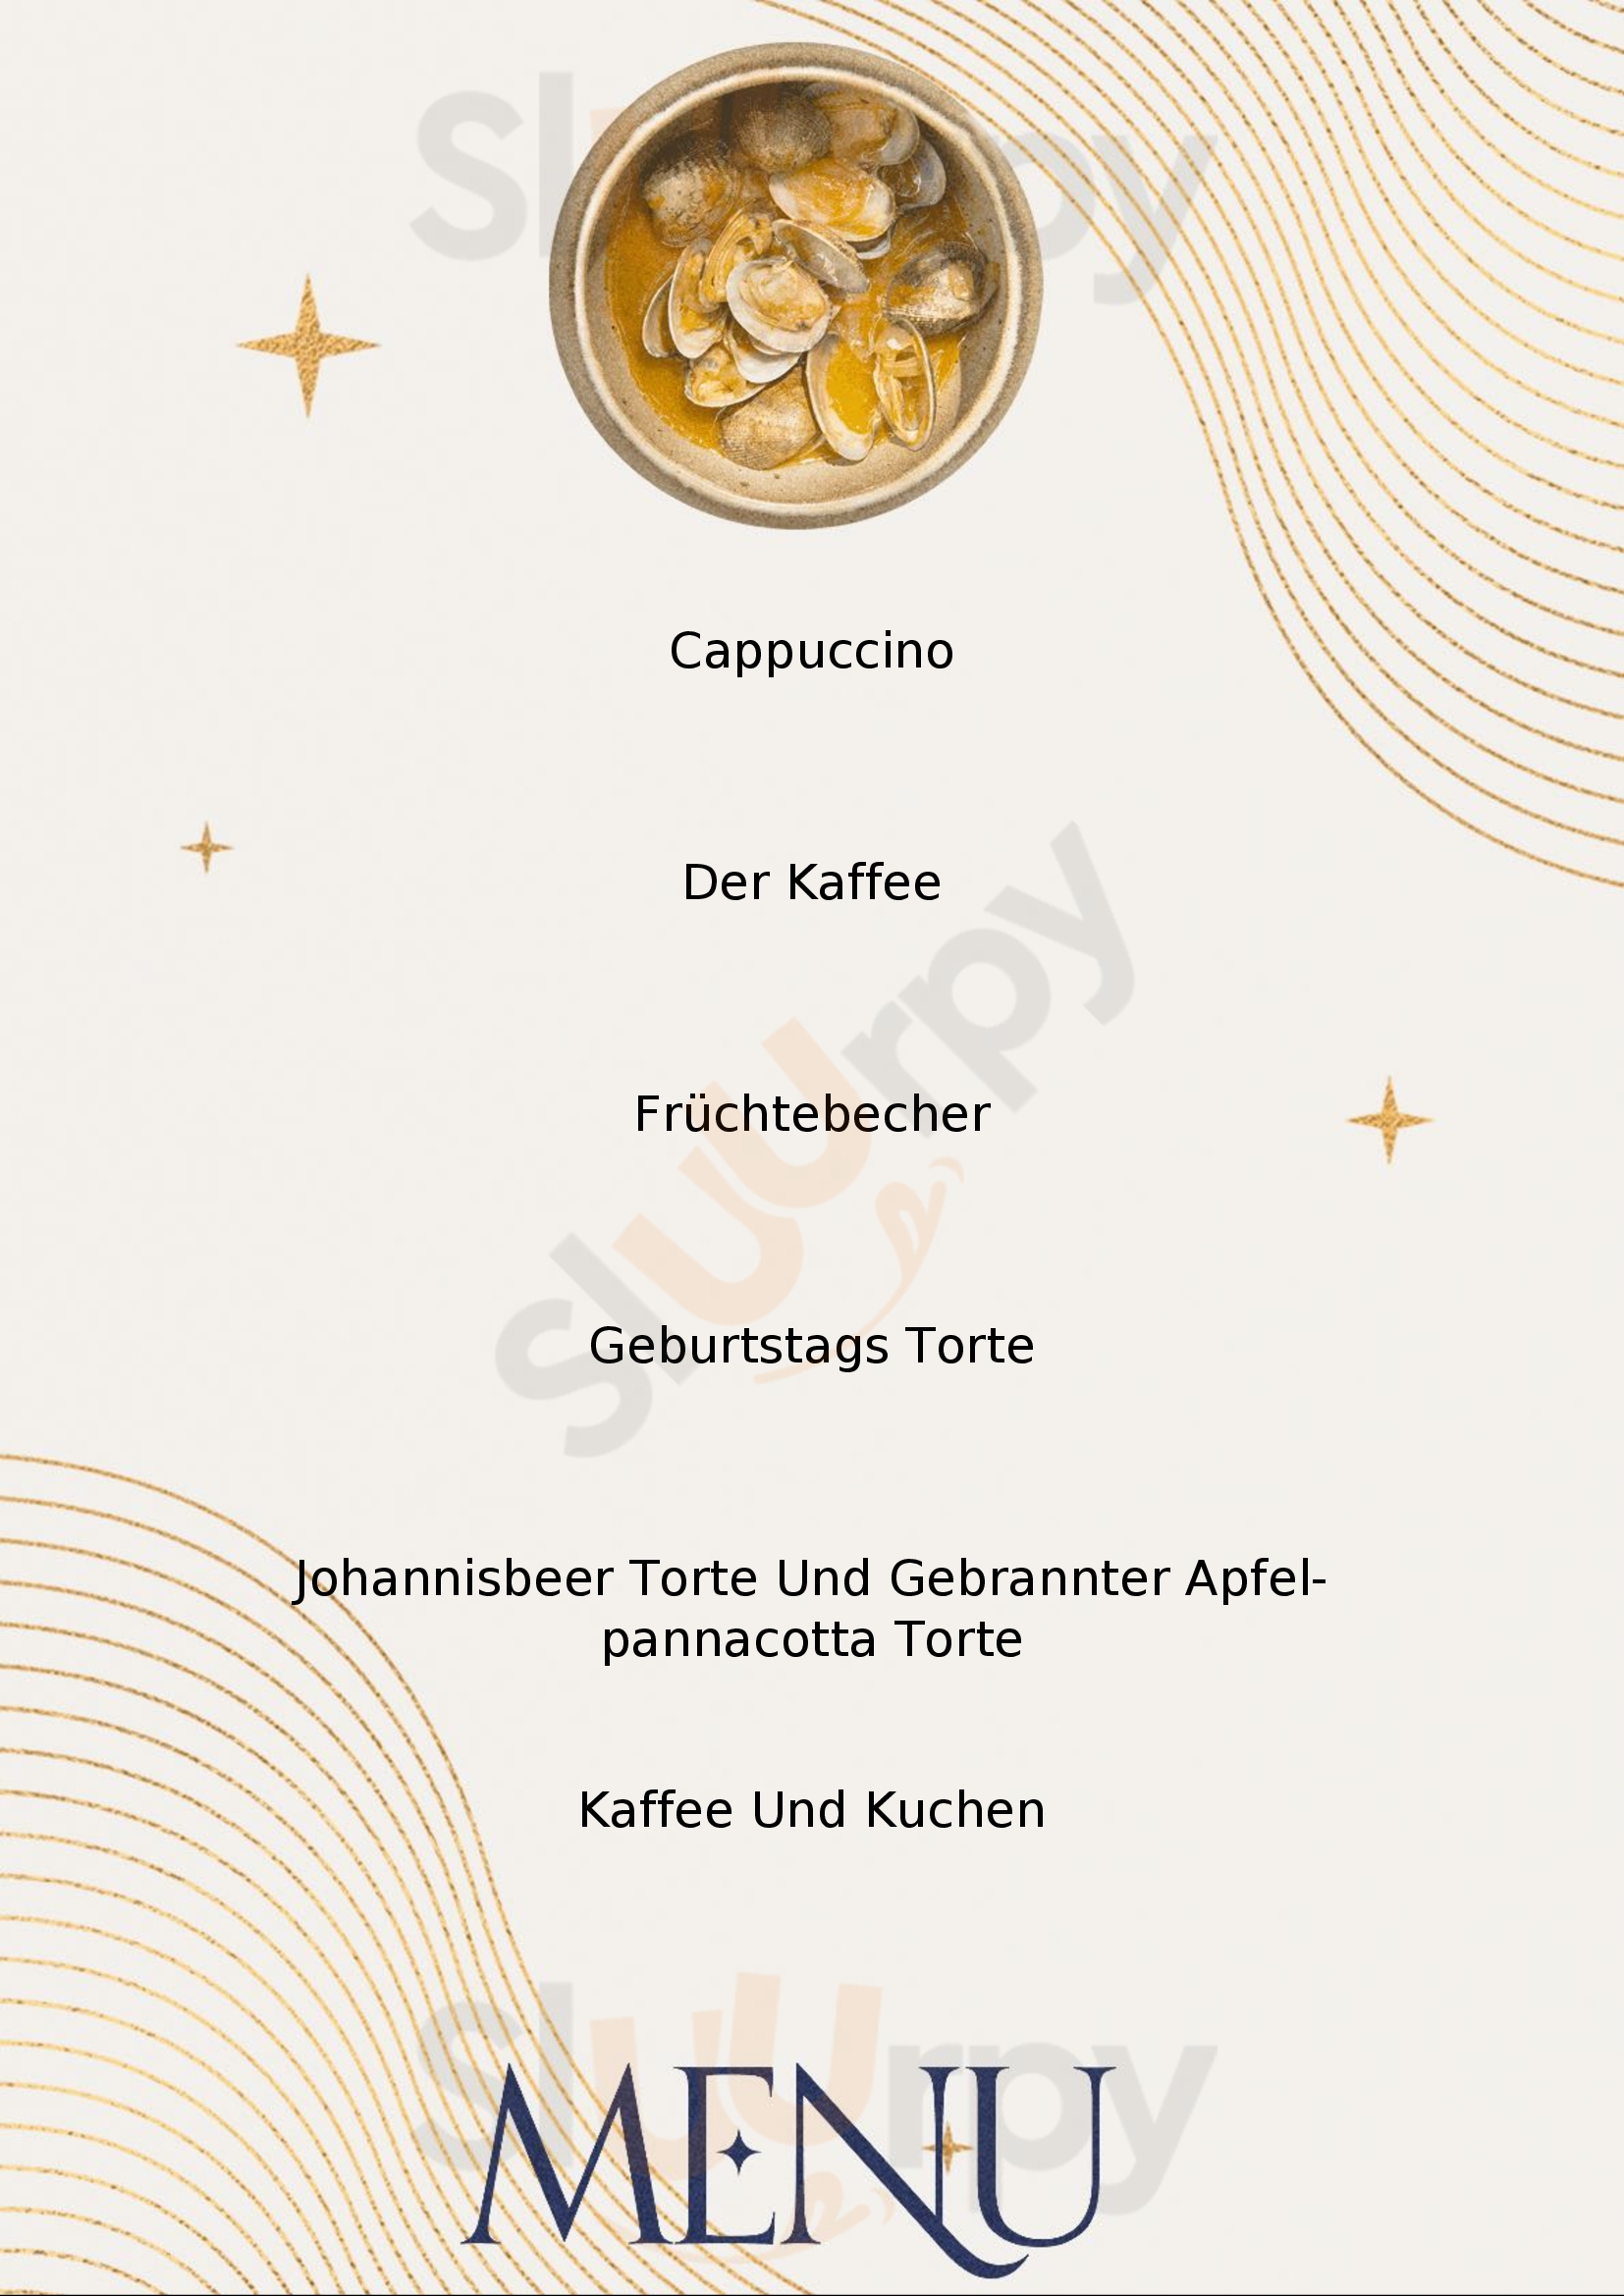 Cafe Hug Schluchsee Menu - 1